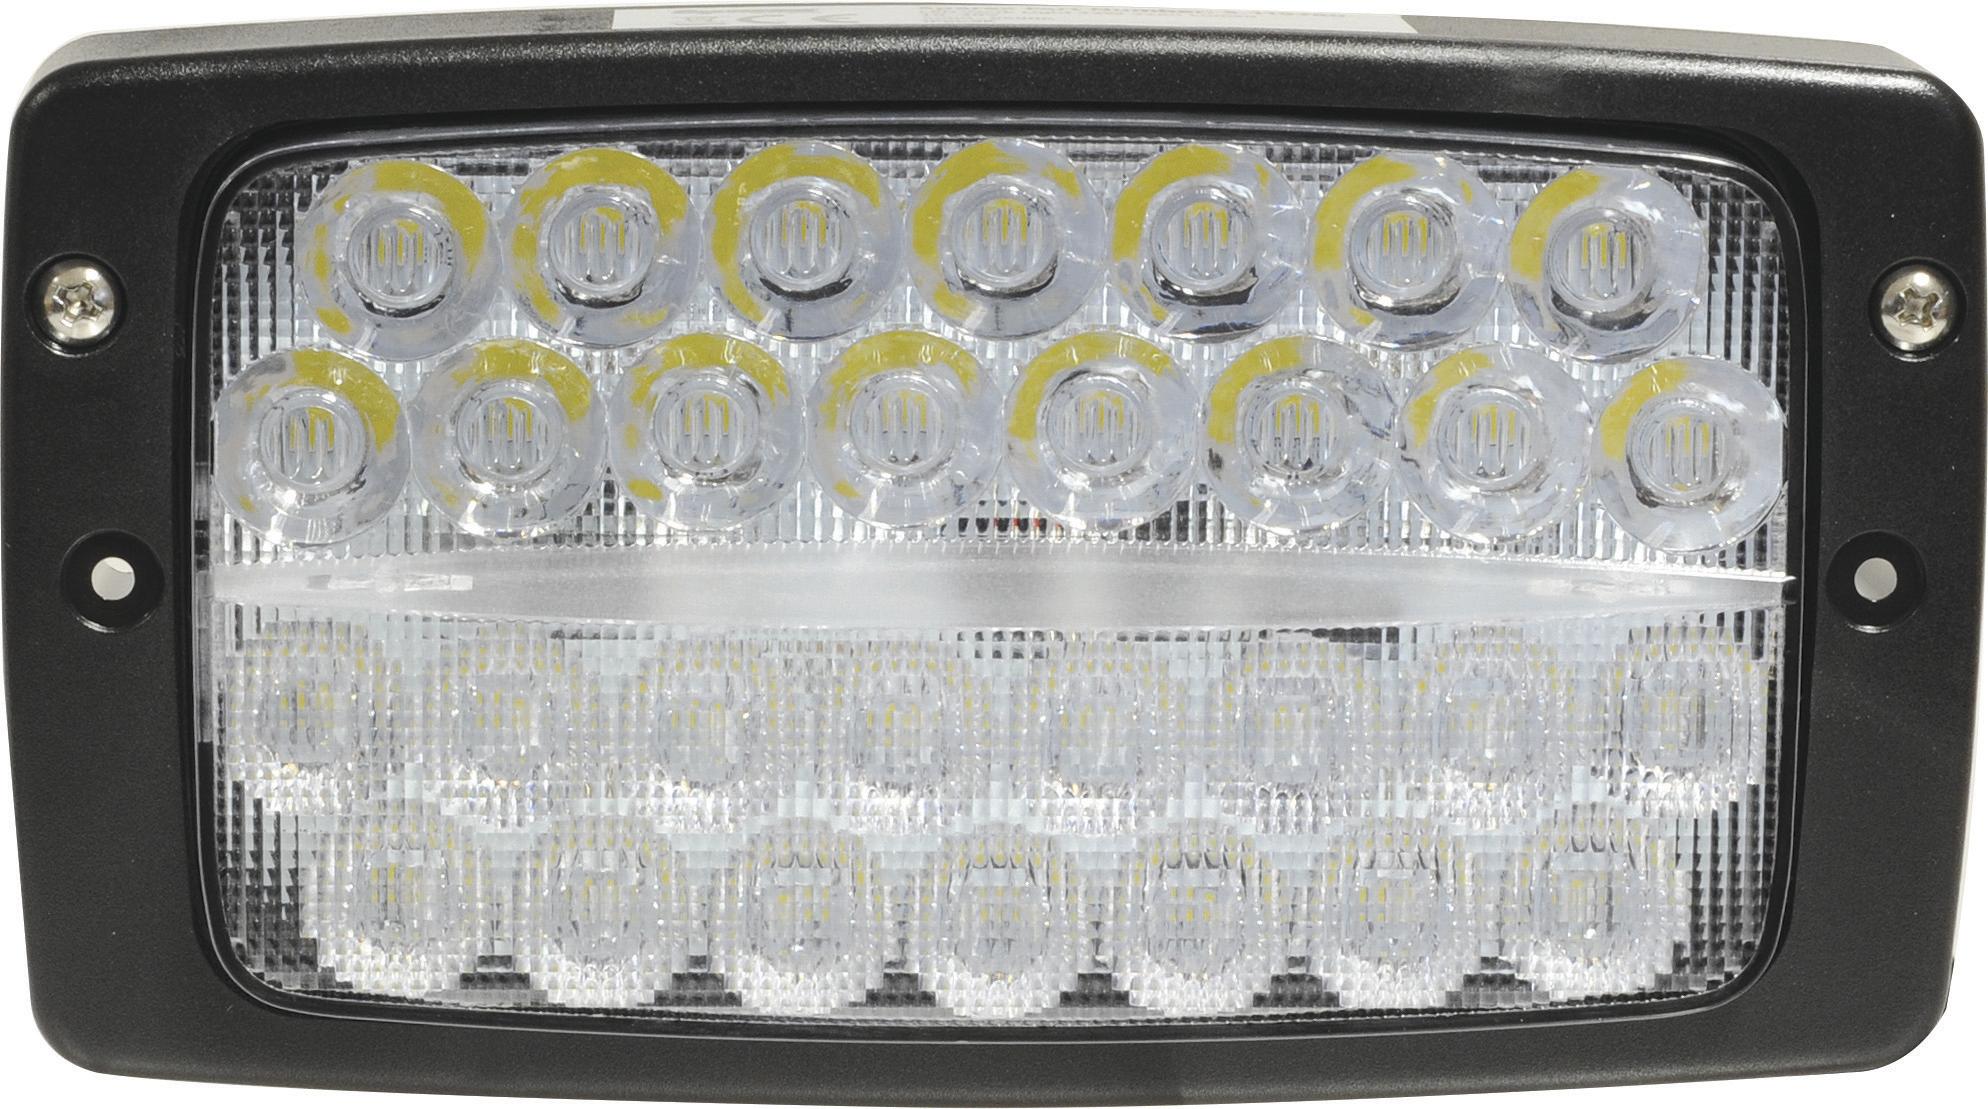 Sparex LED-Arbeitsscheinwerfer, rechteckig, 5400 LM